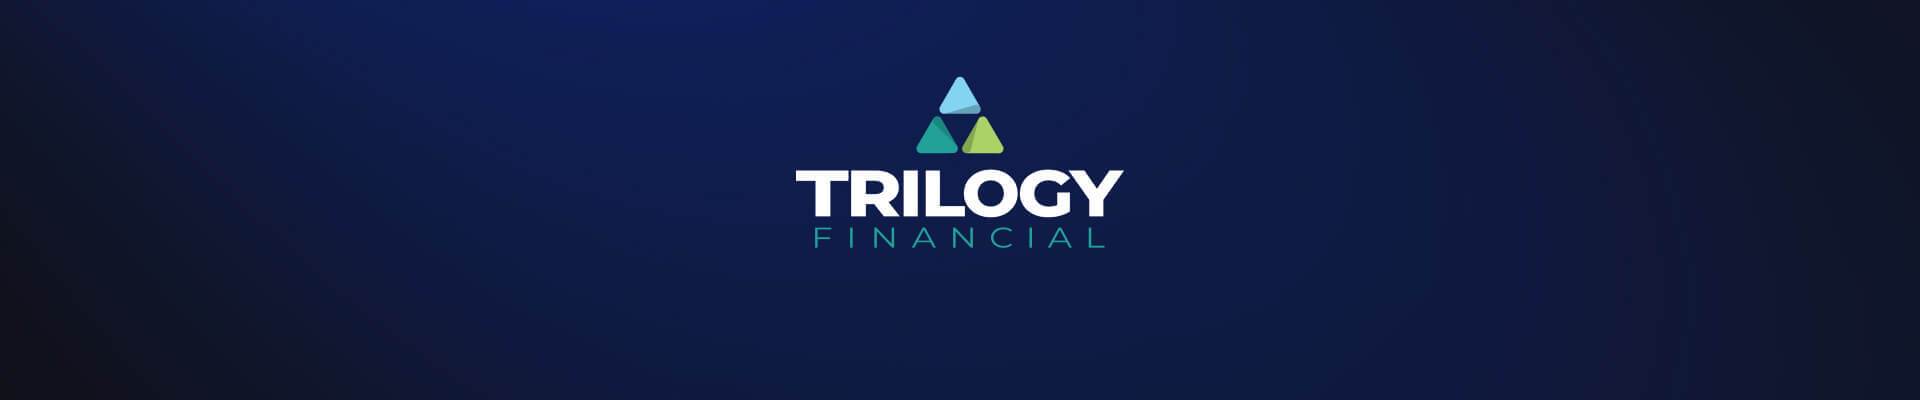 Trilogy Financial logo